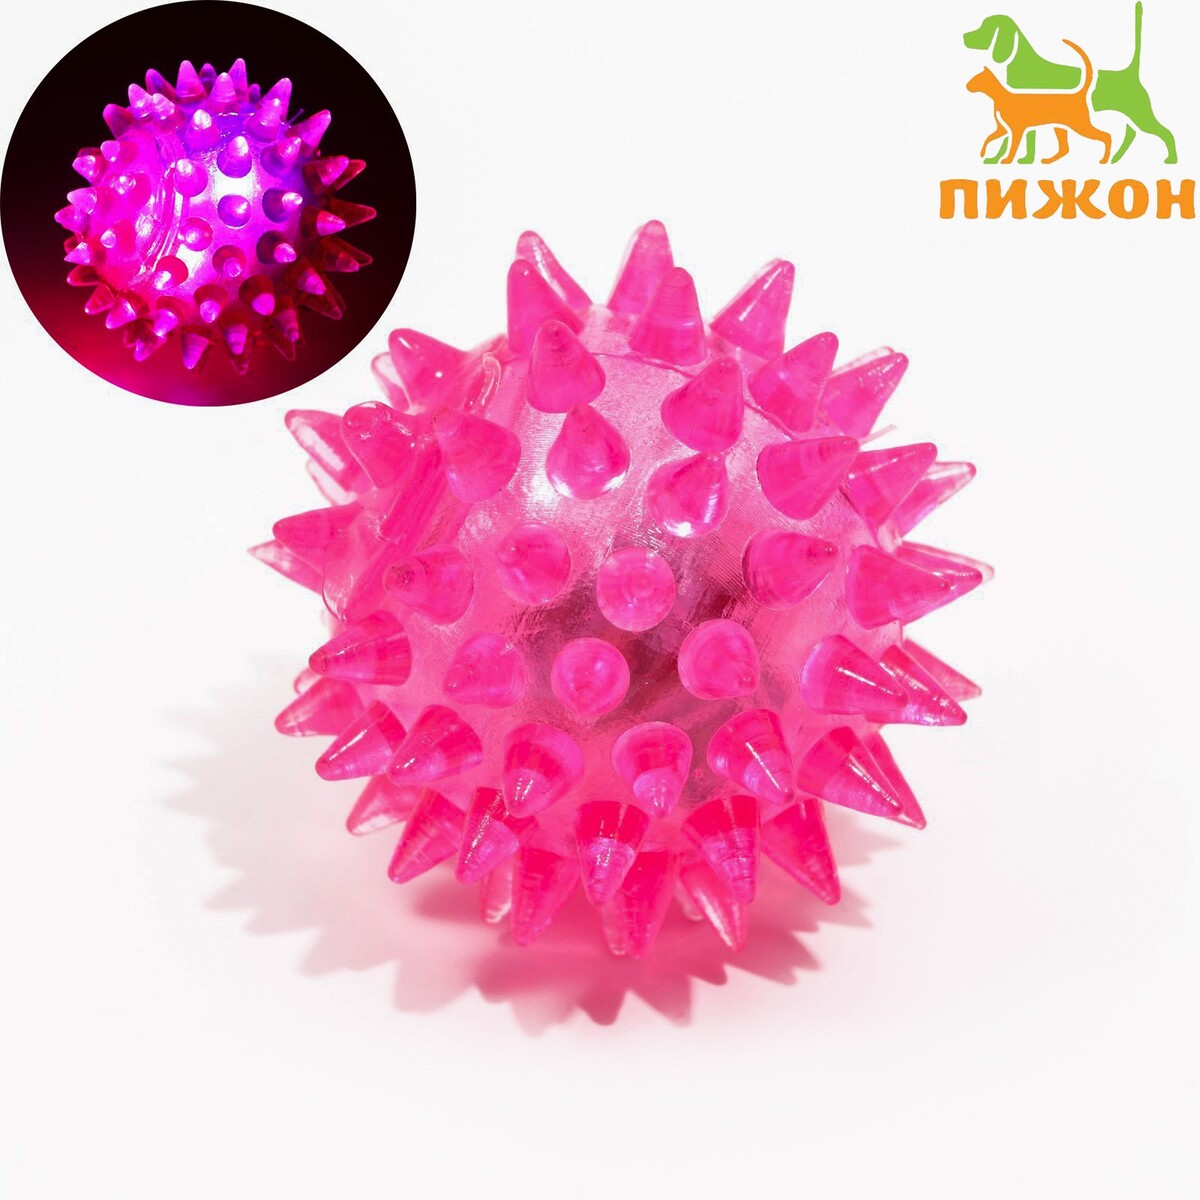 Мяч светящийся для животных малый, tpr, 4,5 см, розовый мяч светящийся для животных малый tpr 4 5 см голубой